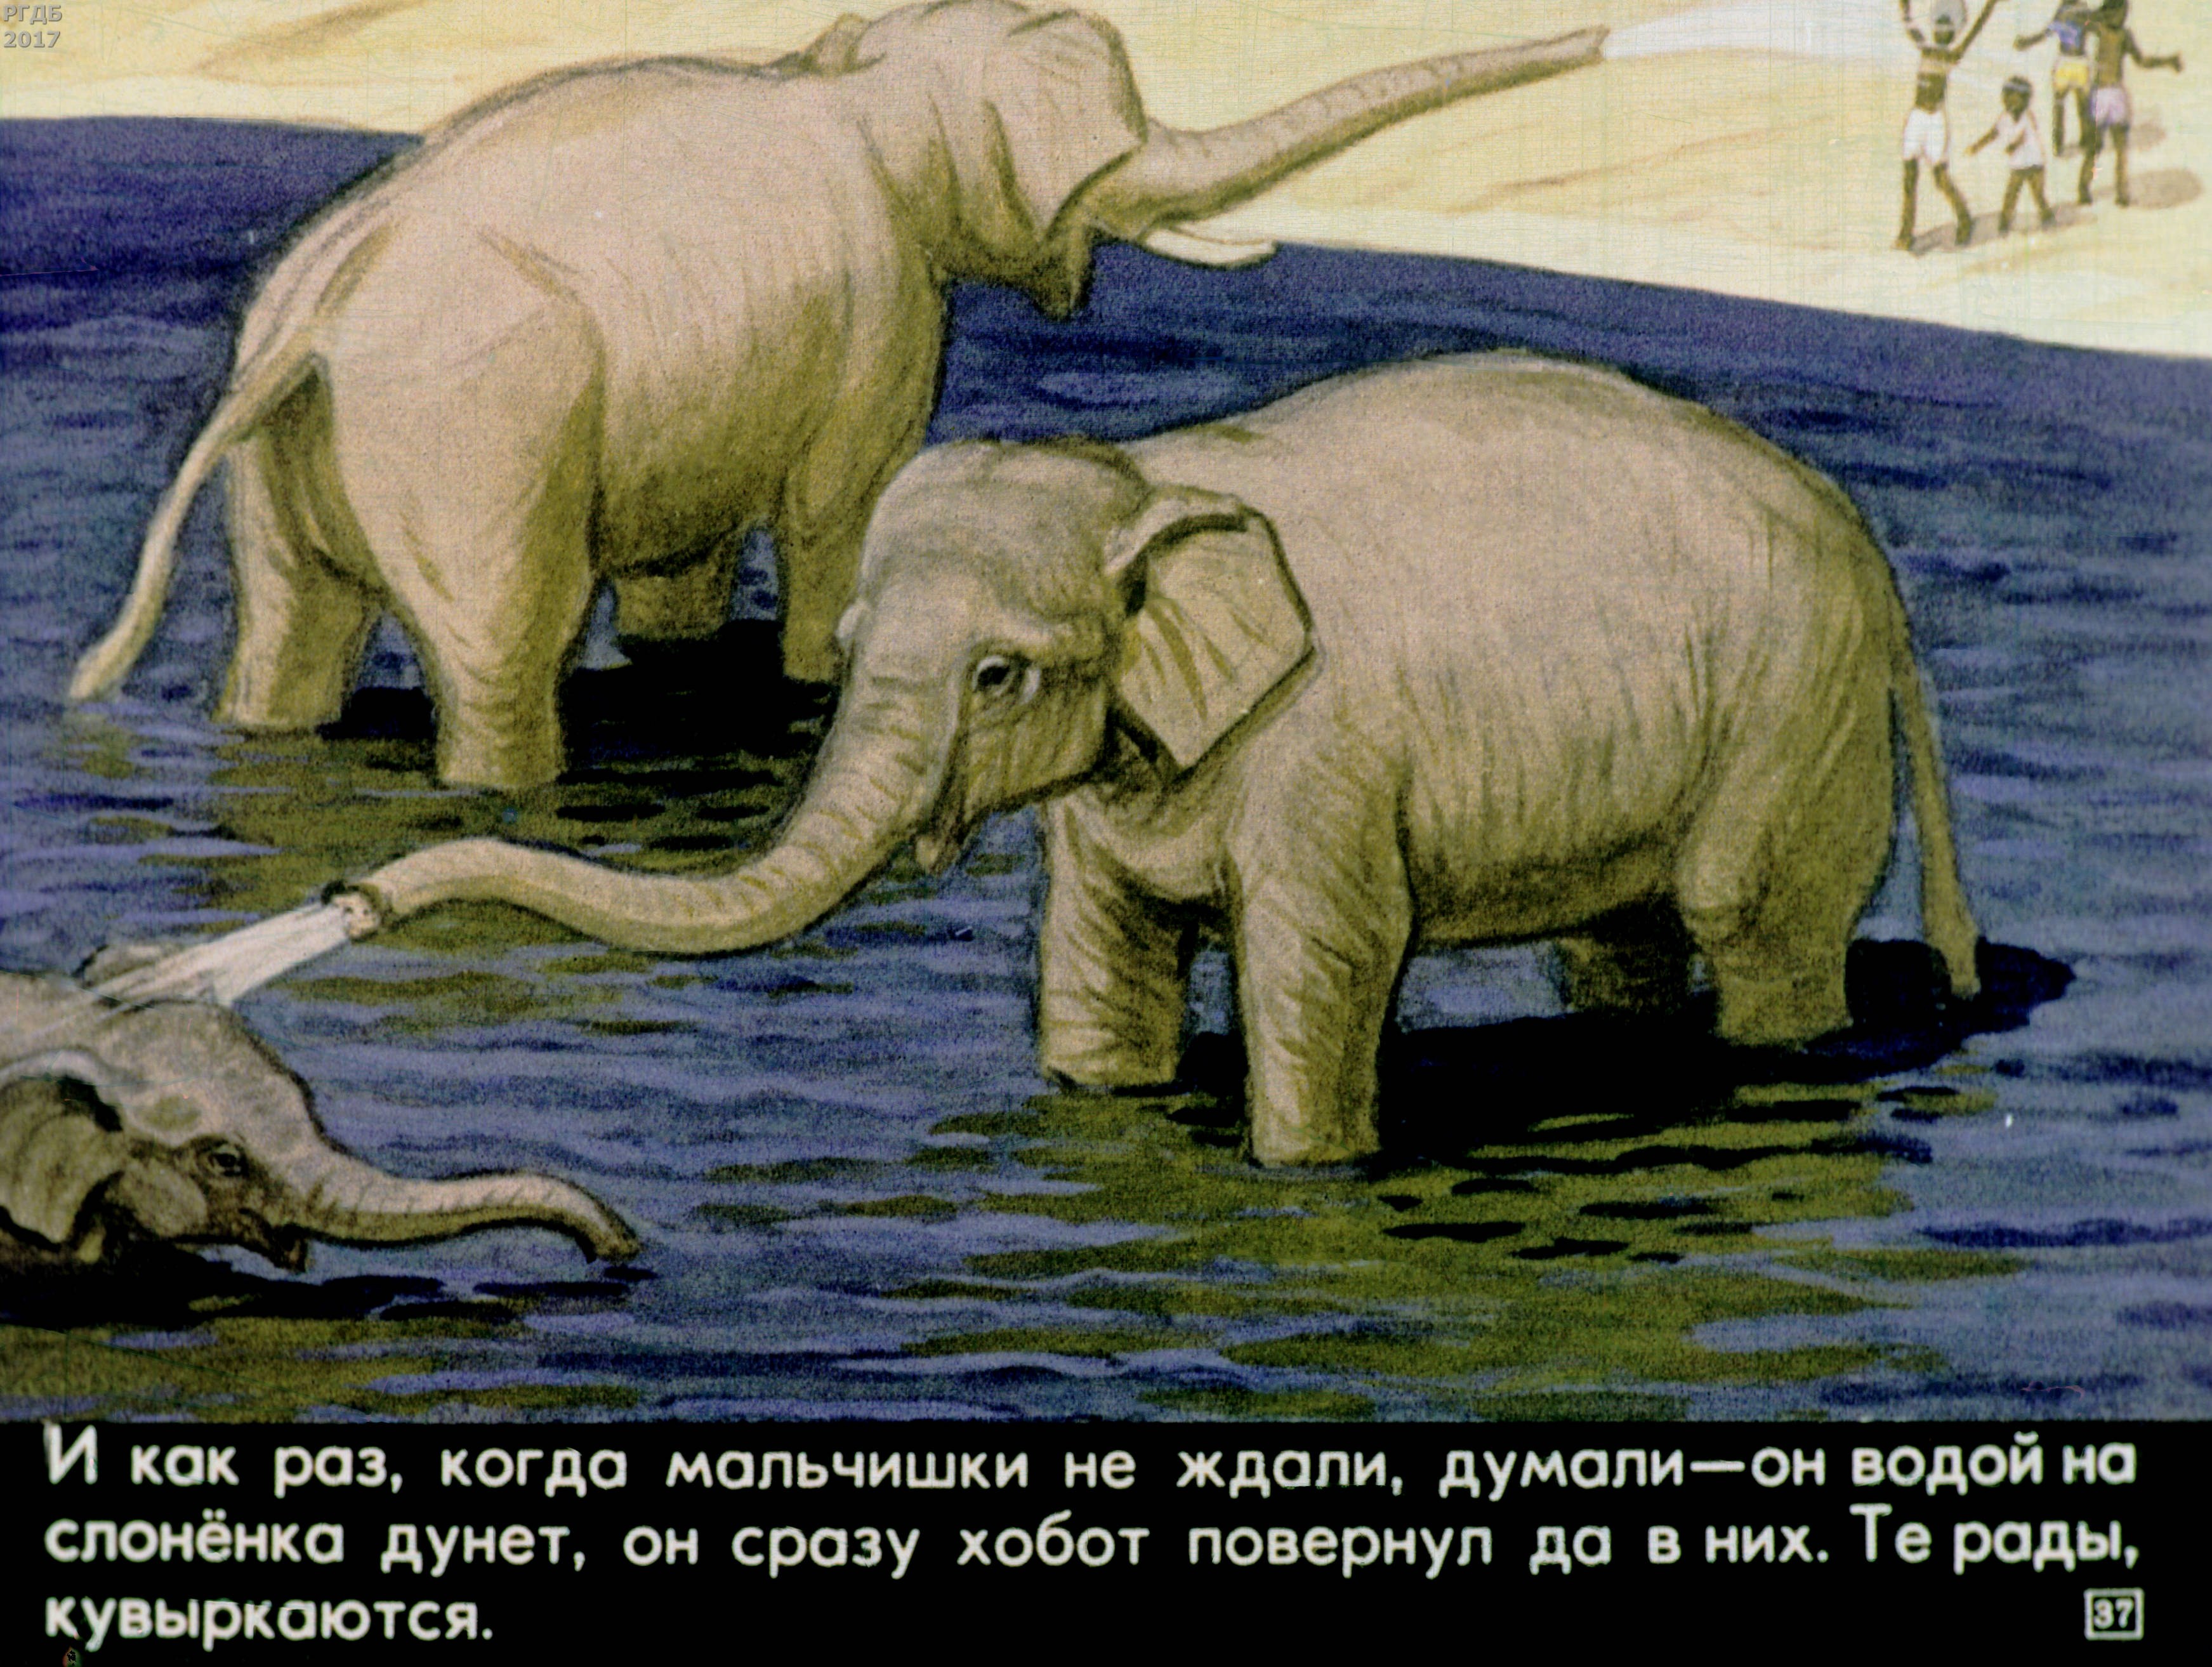 Читать про слона. Житков про слона. Рассказ Житкова про слона. Житков про слона иллюстрации.